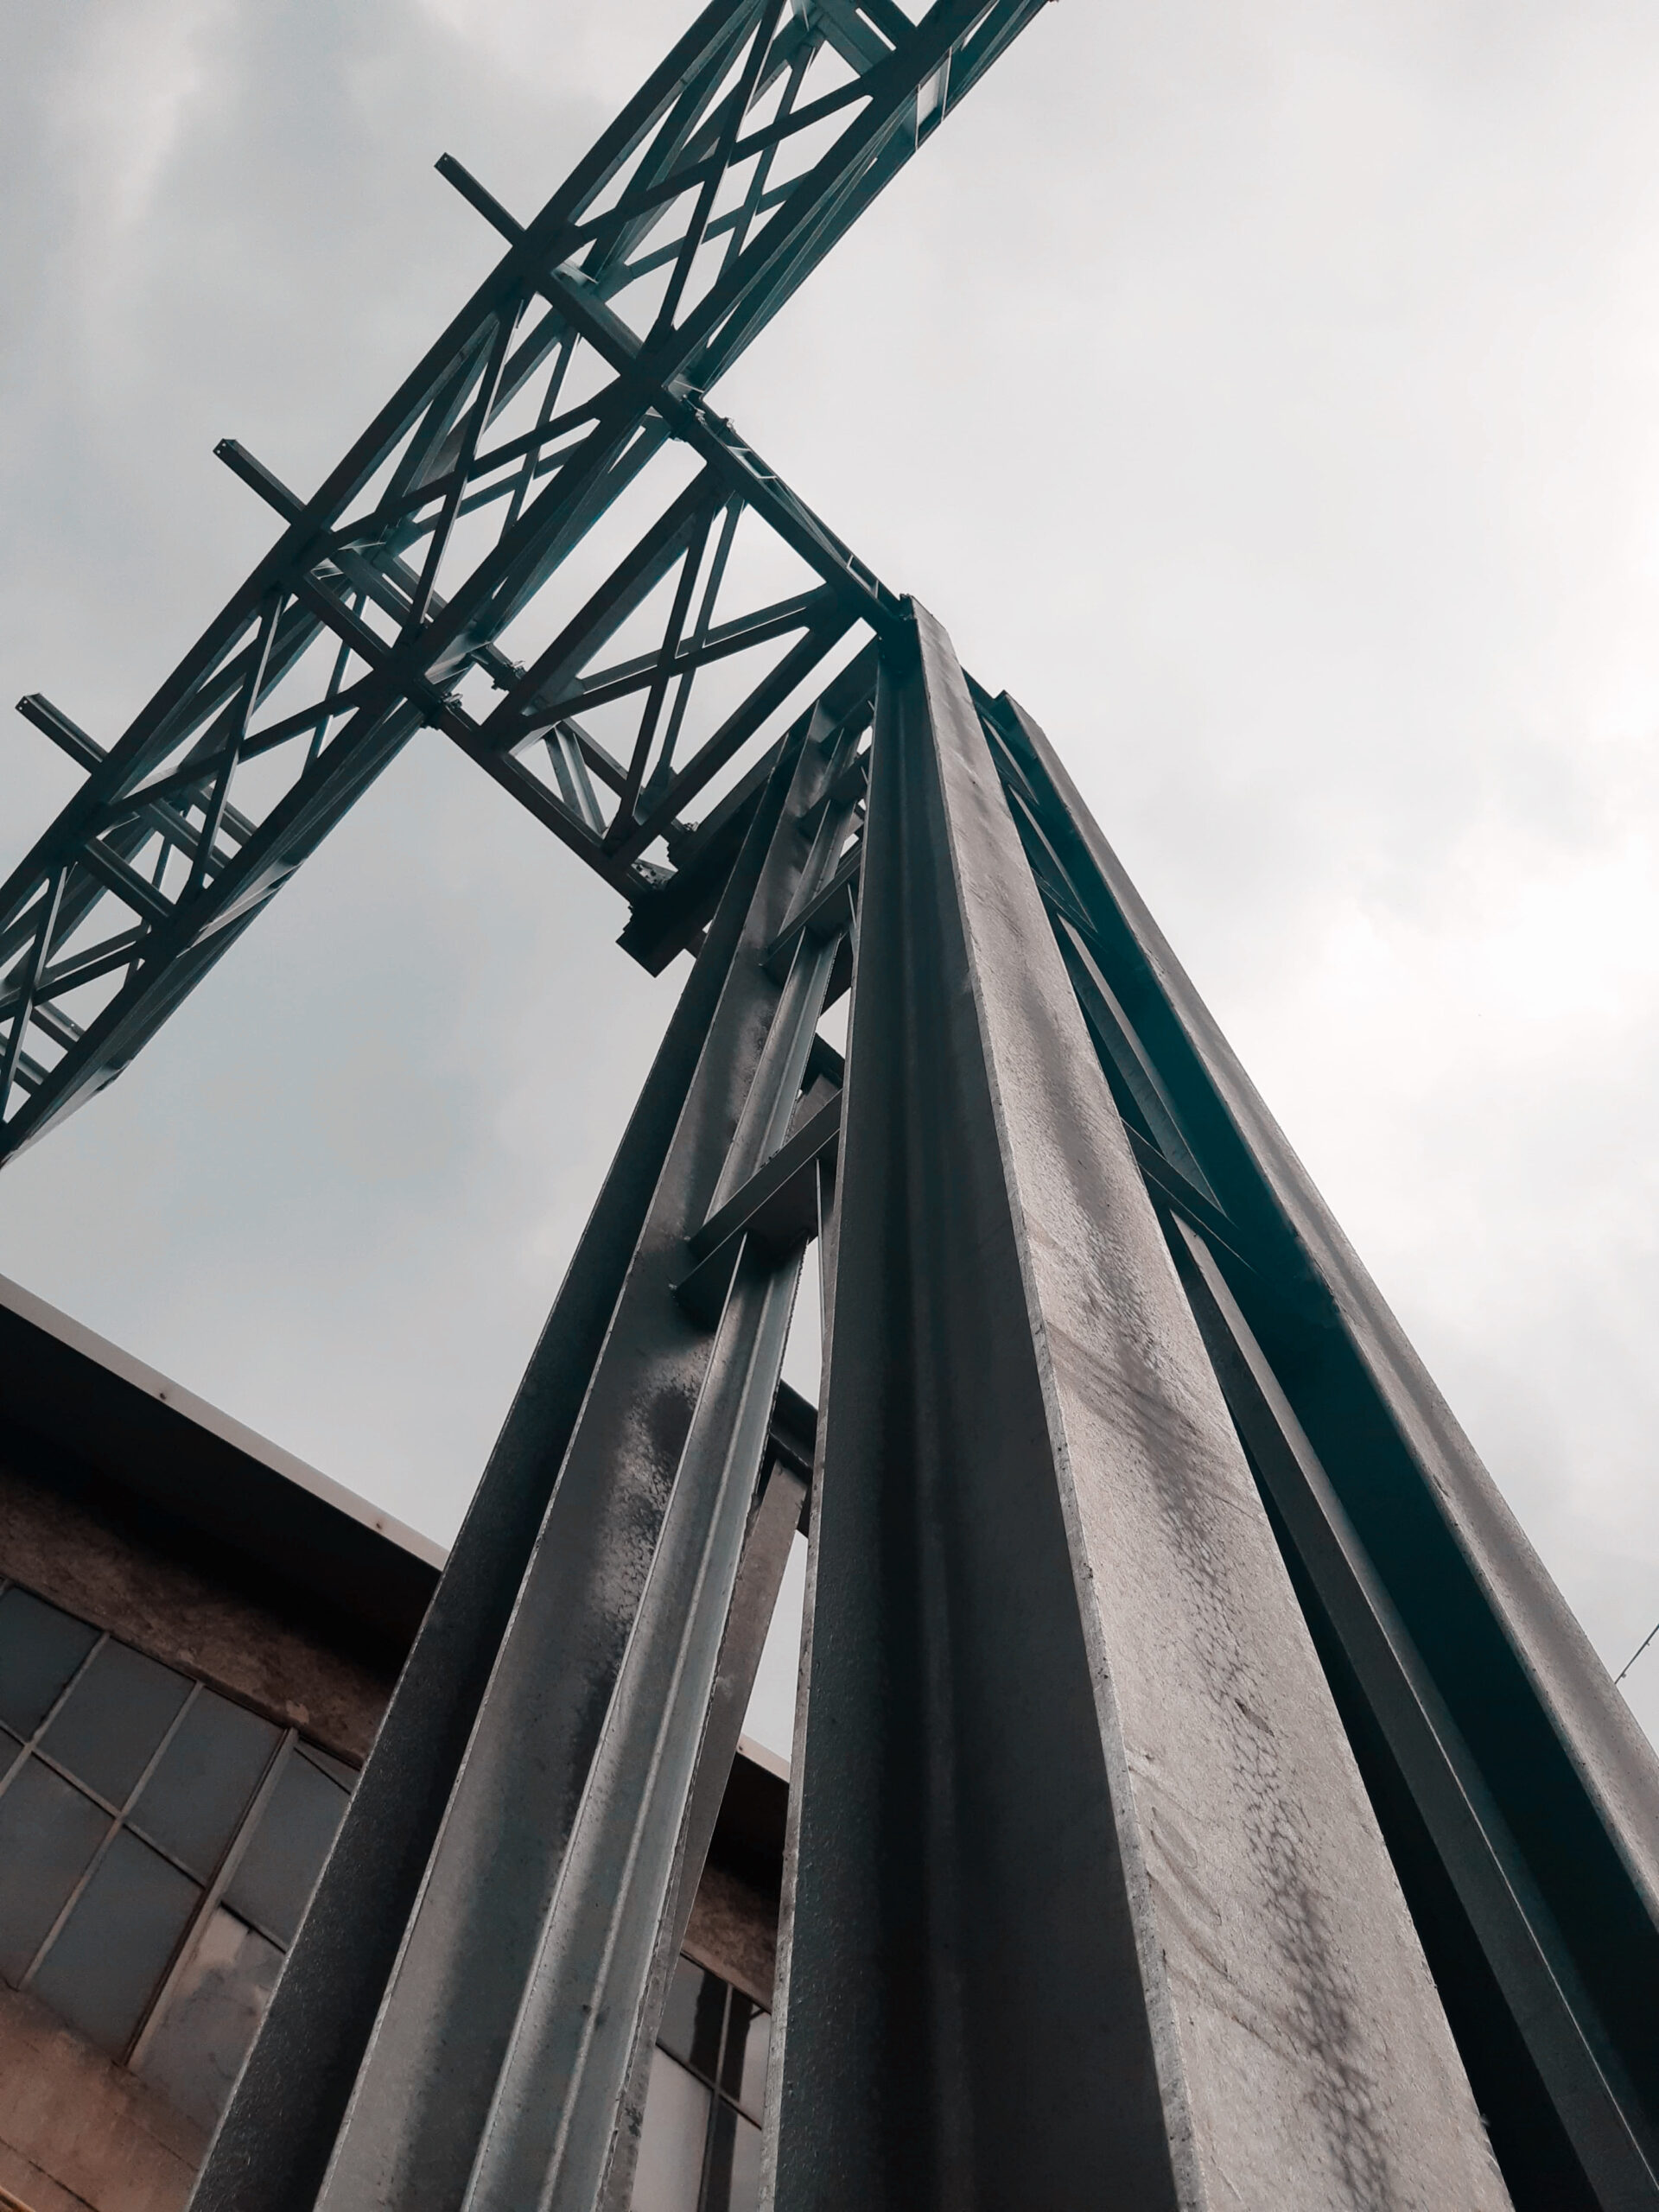 Imponente struttura di carpenteria in acciaio, testimonianza di precisione e robustezza nella realizzazione di progetti industriali relativi alla carpenteria metallica a Brescia.